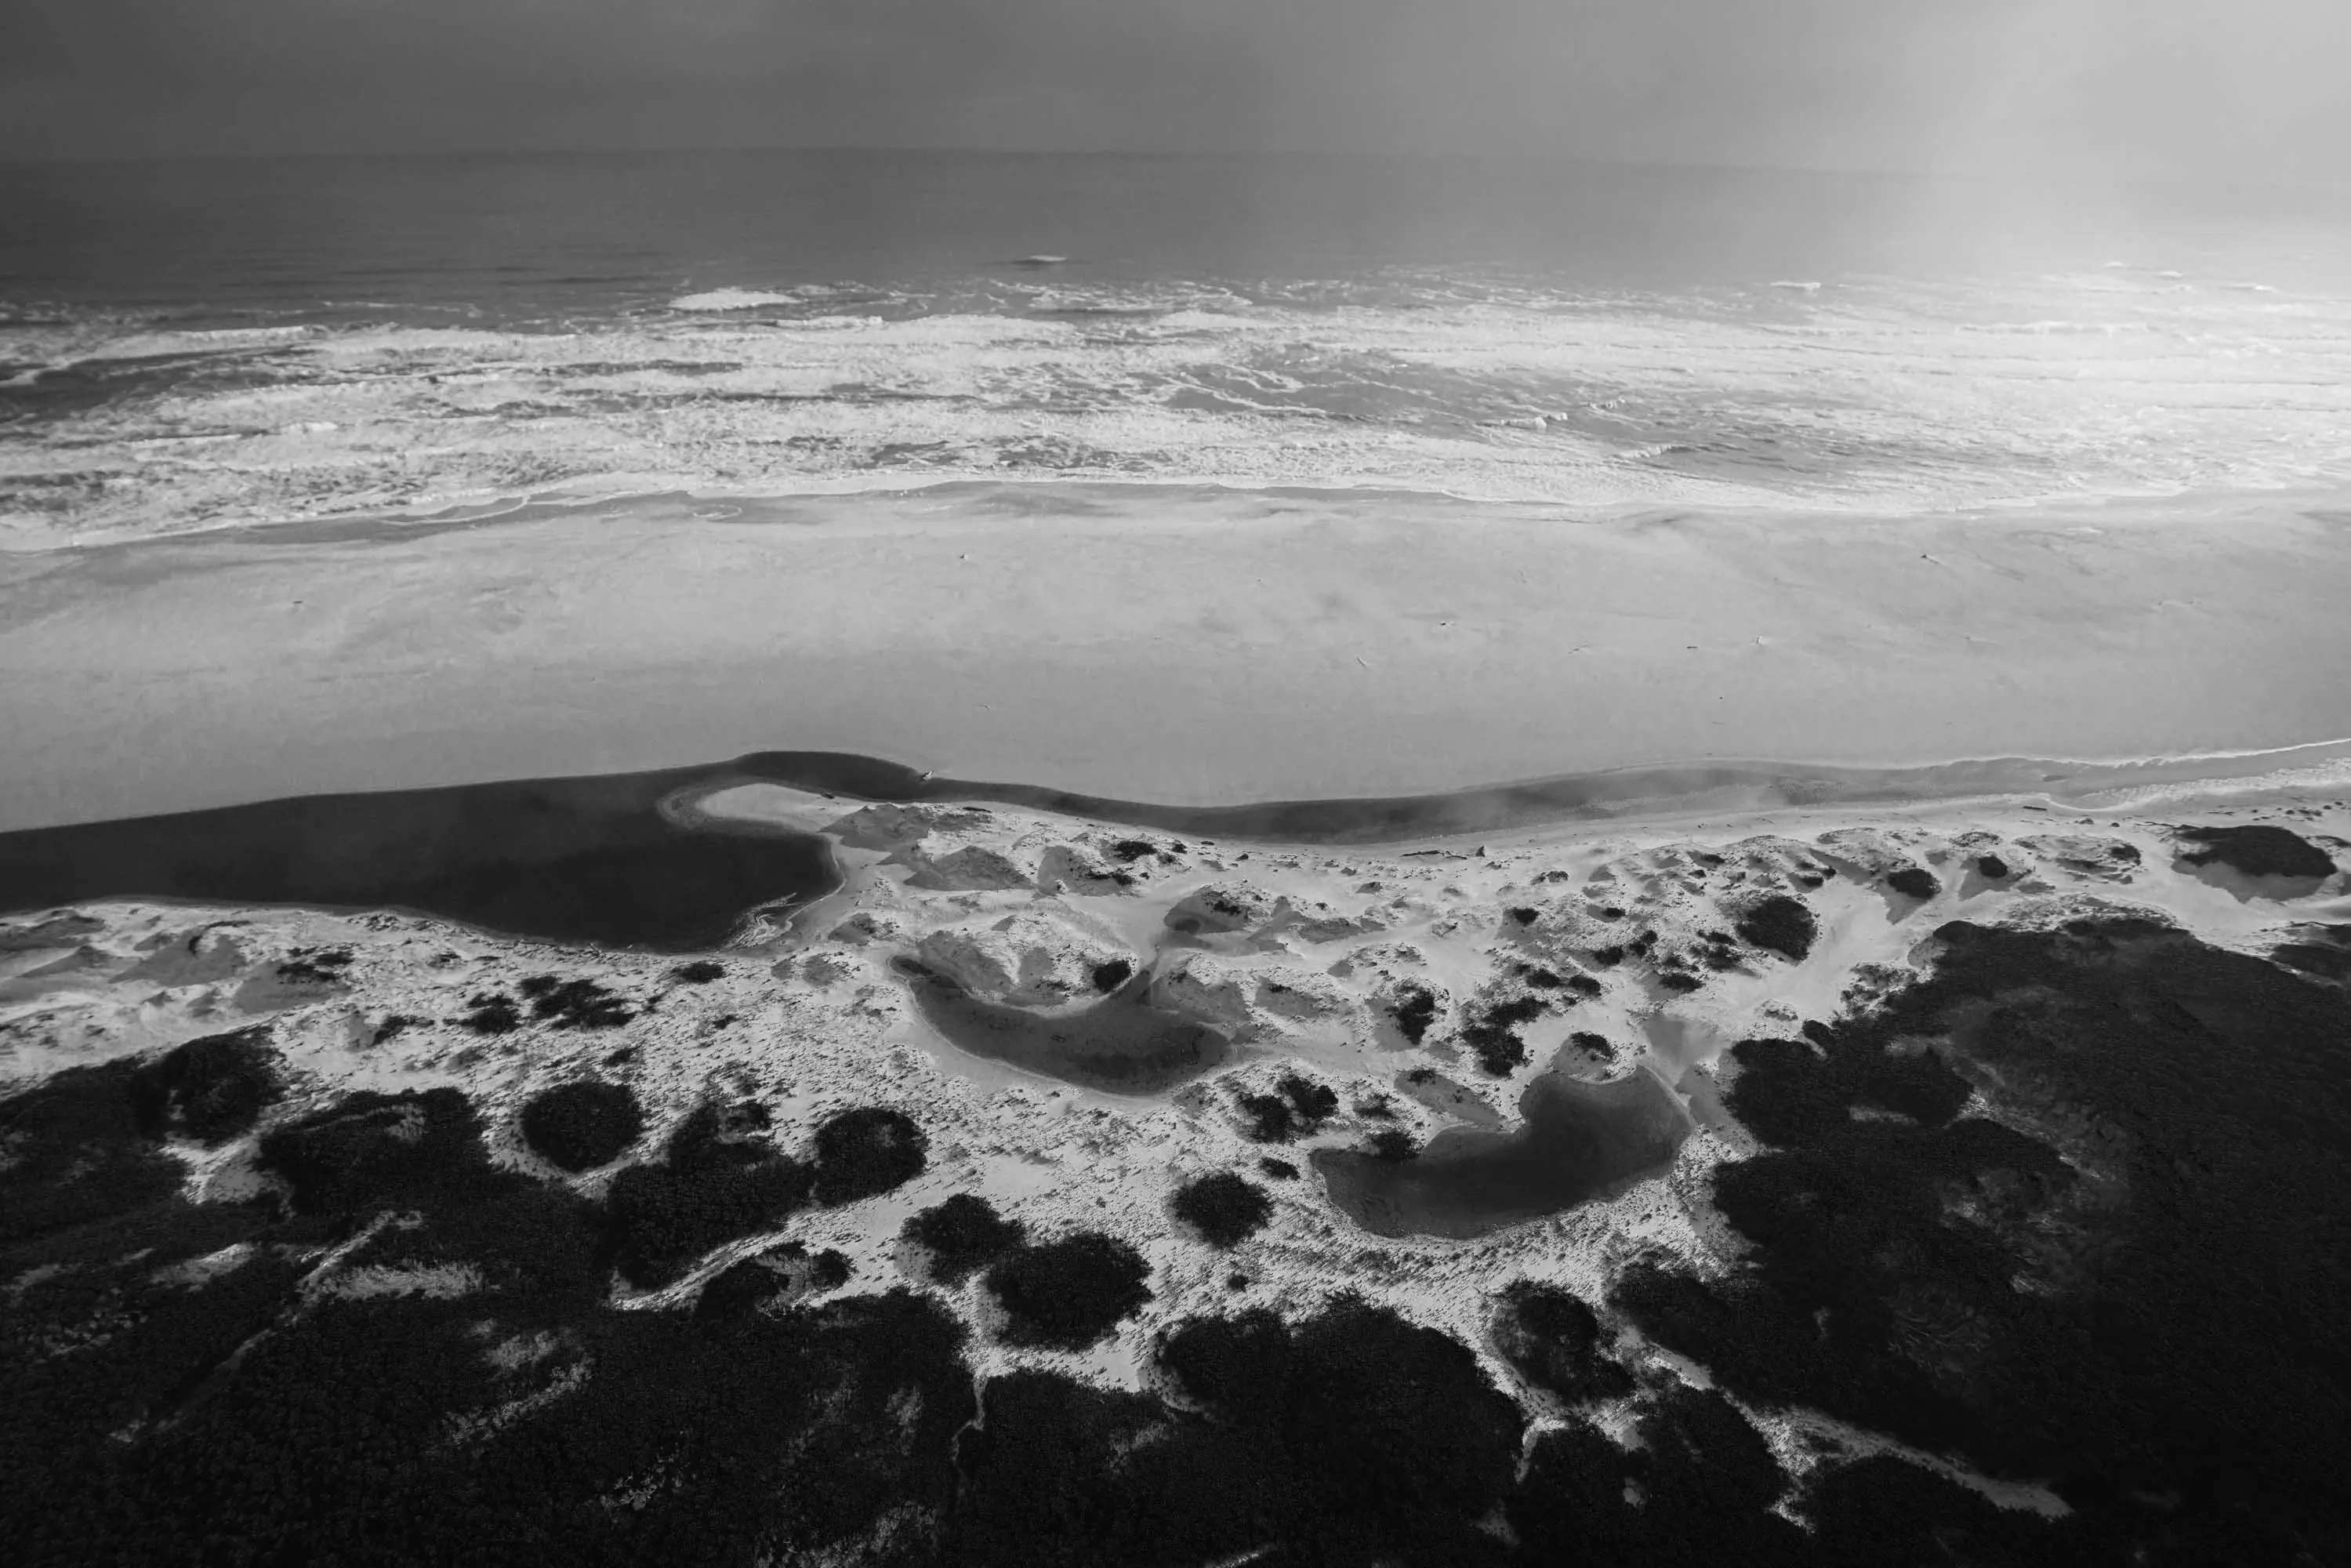 An aerial photograph of a water crashing onto a vast, sandy beach near the coast. 